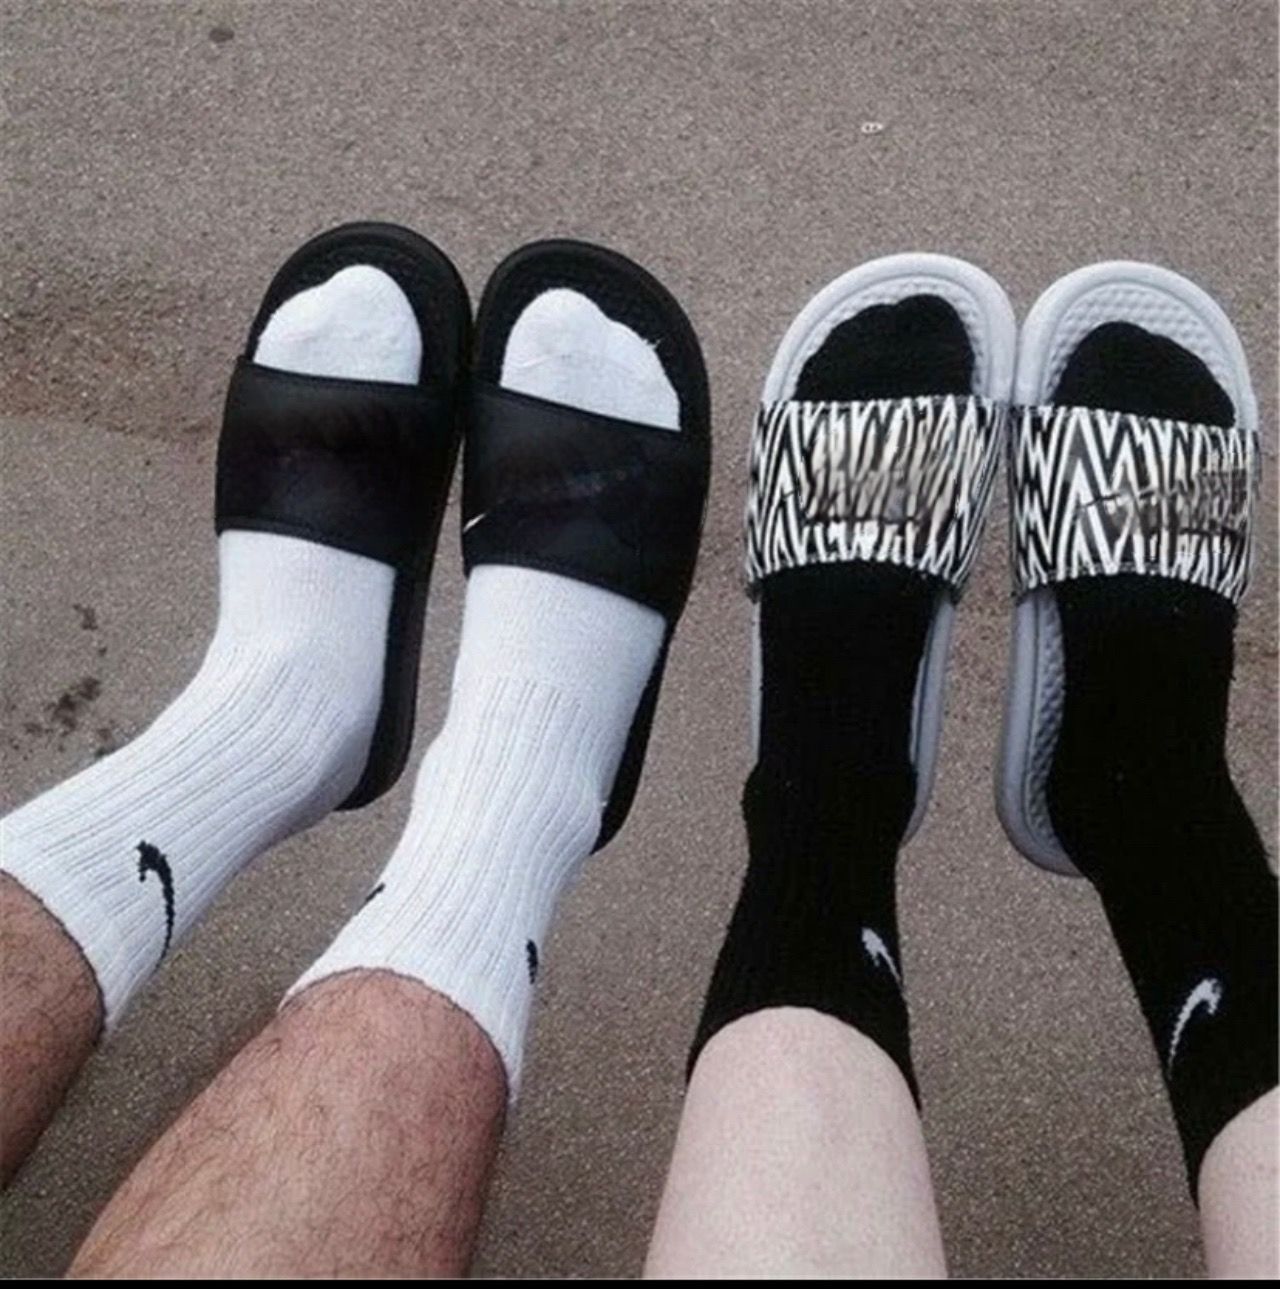 Ношенные носочки. Sx7664-100 Nike. Носки найк черные и белые. Носки найк черные высокие. Носки найк мужские черные.